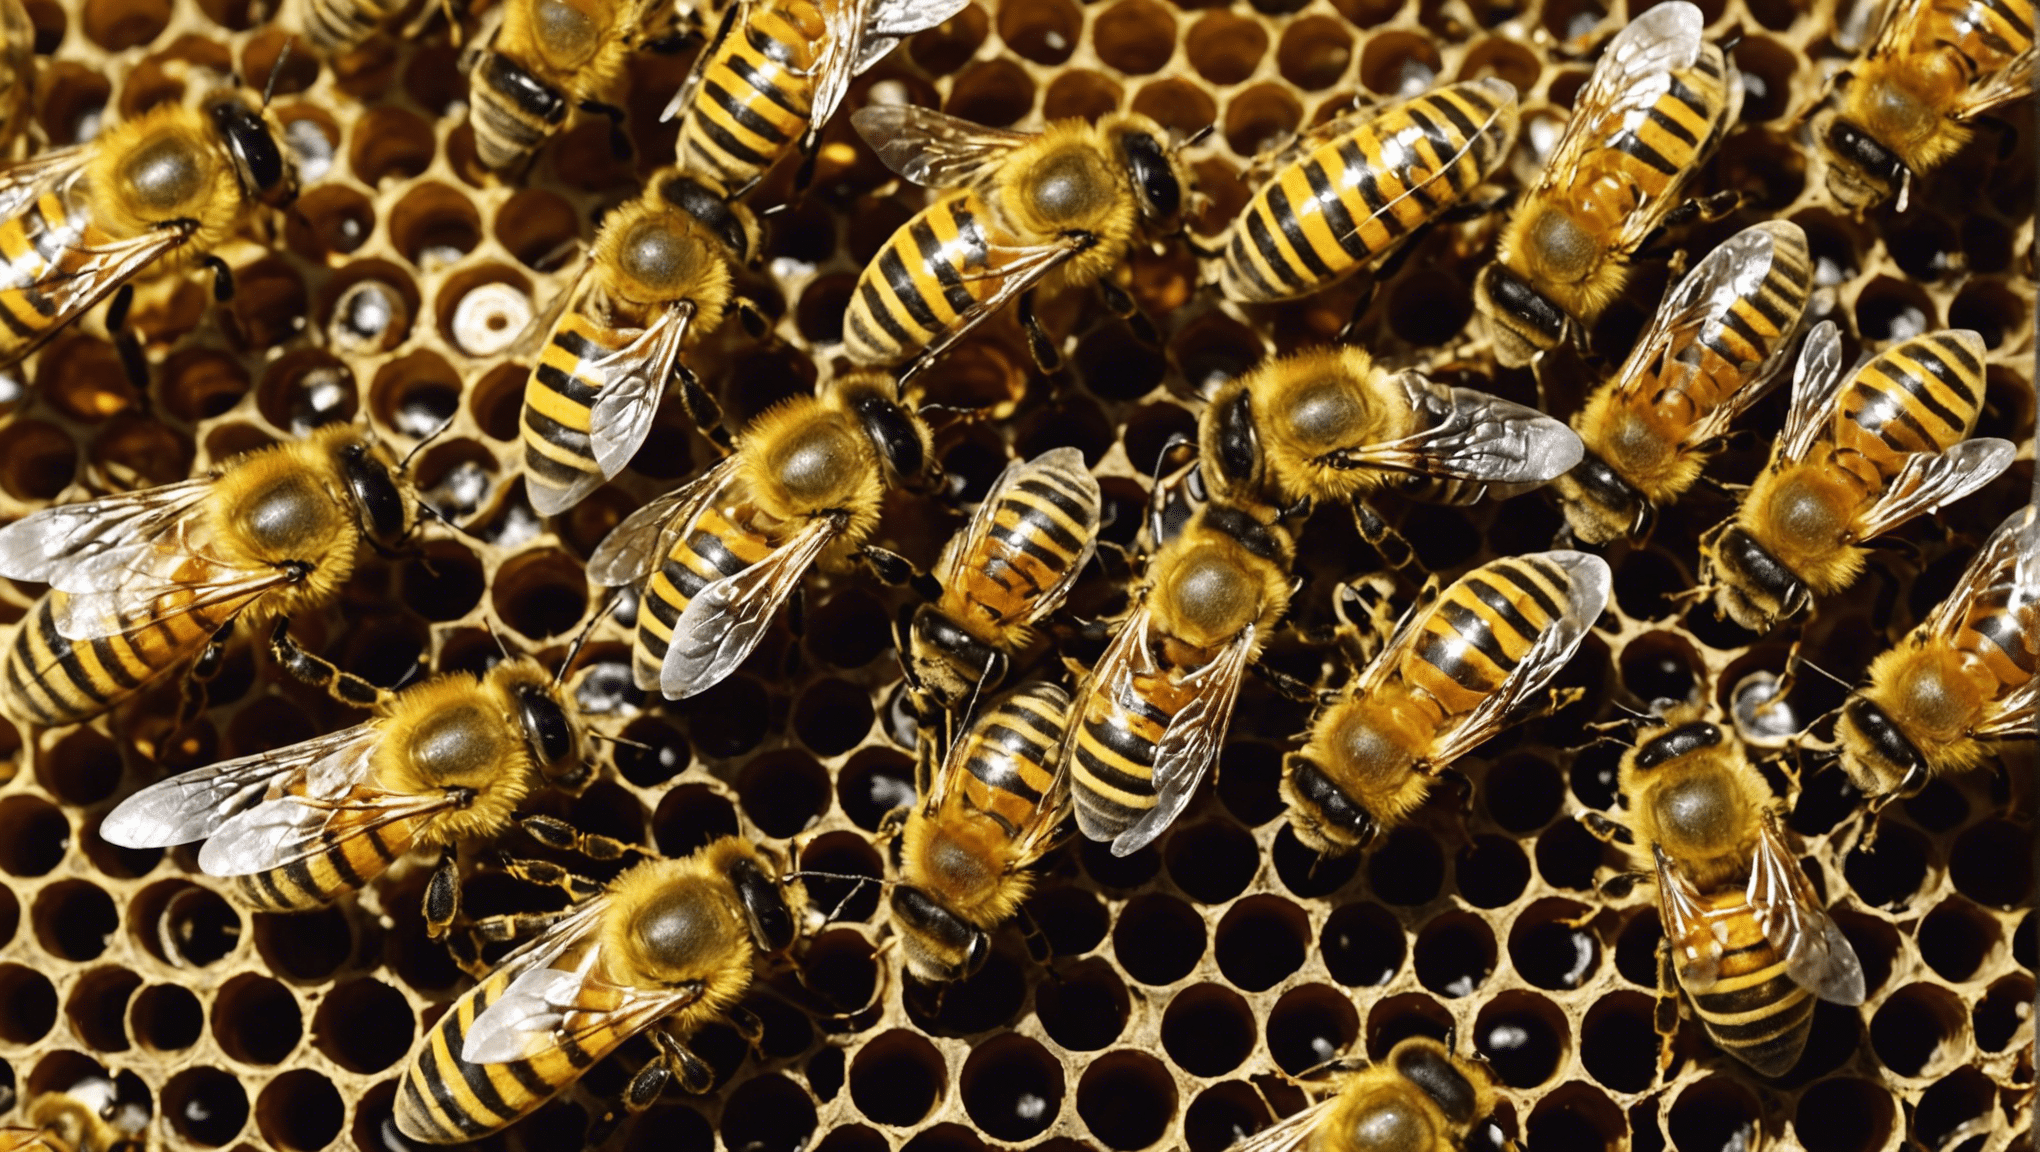 この魅力的な記事で、ミツバチの生活がなぜそれほど素晴らしく、私たちの生態系にとって不可欠であるのかを発見してください。